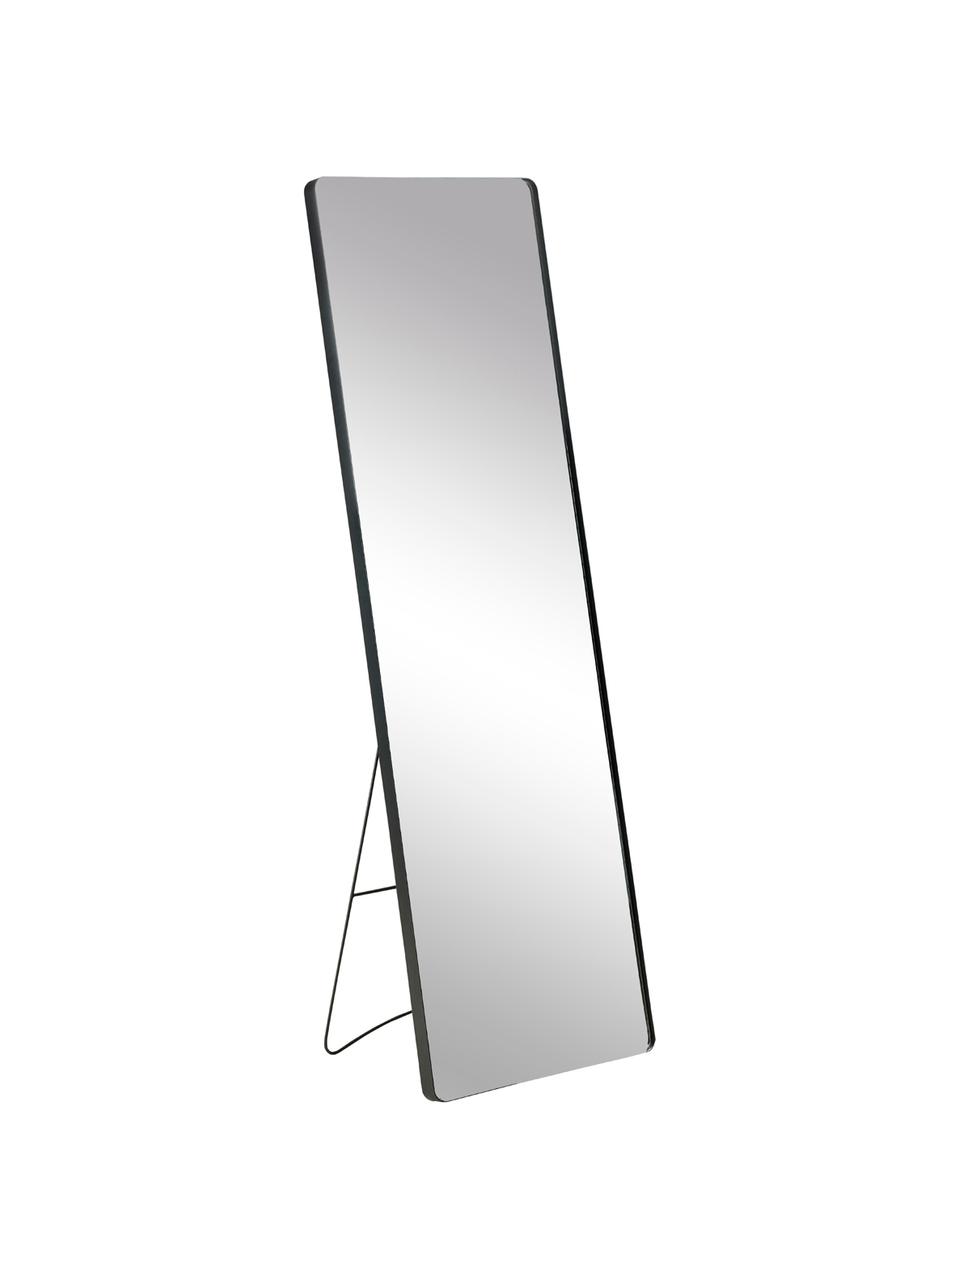 Eckiger Standspiegel Stefo mit schwarzem Metallrahmen, Rahmen: Metall, beschichtet, Spiegelfläche: Spiegelglas, Schwarz, B 45 x H 140 cm